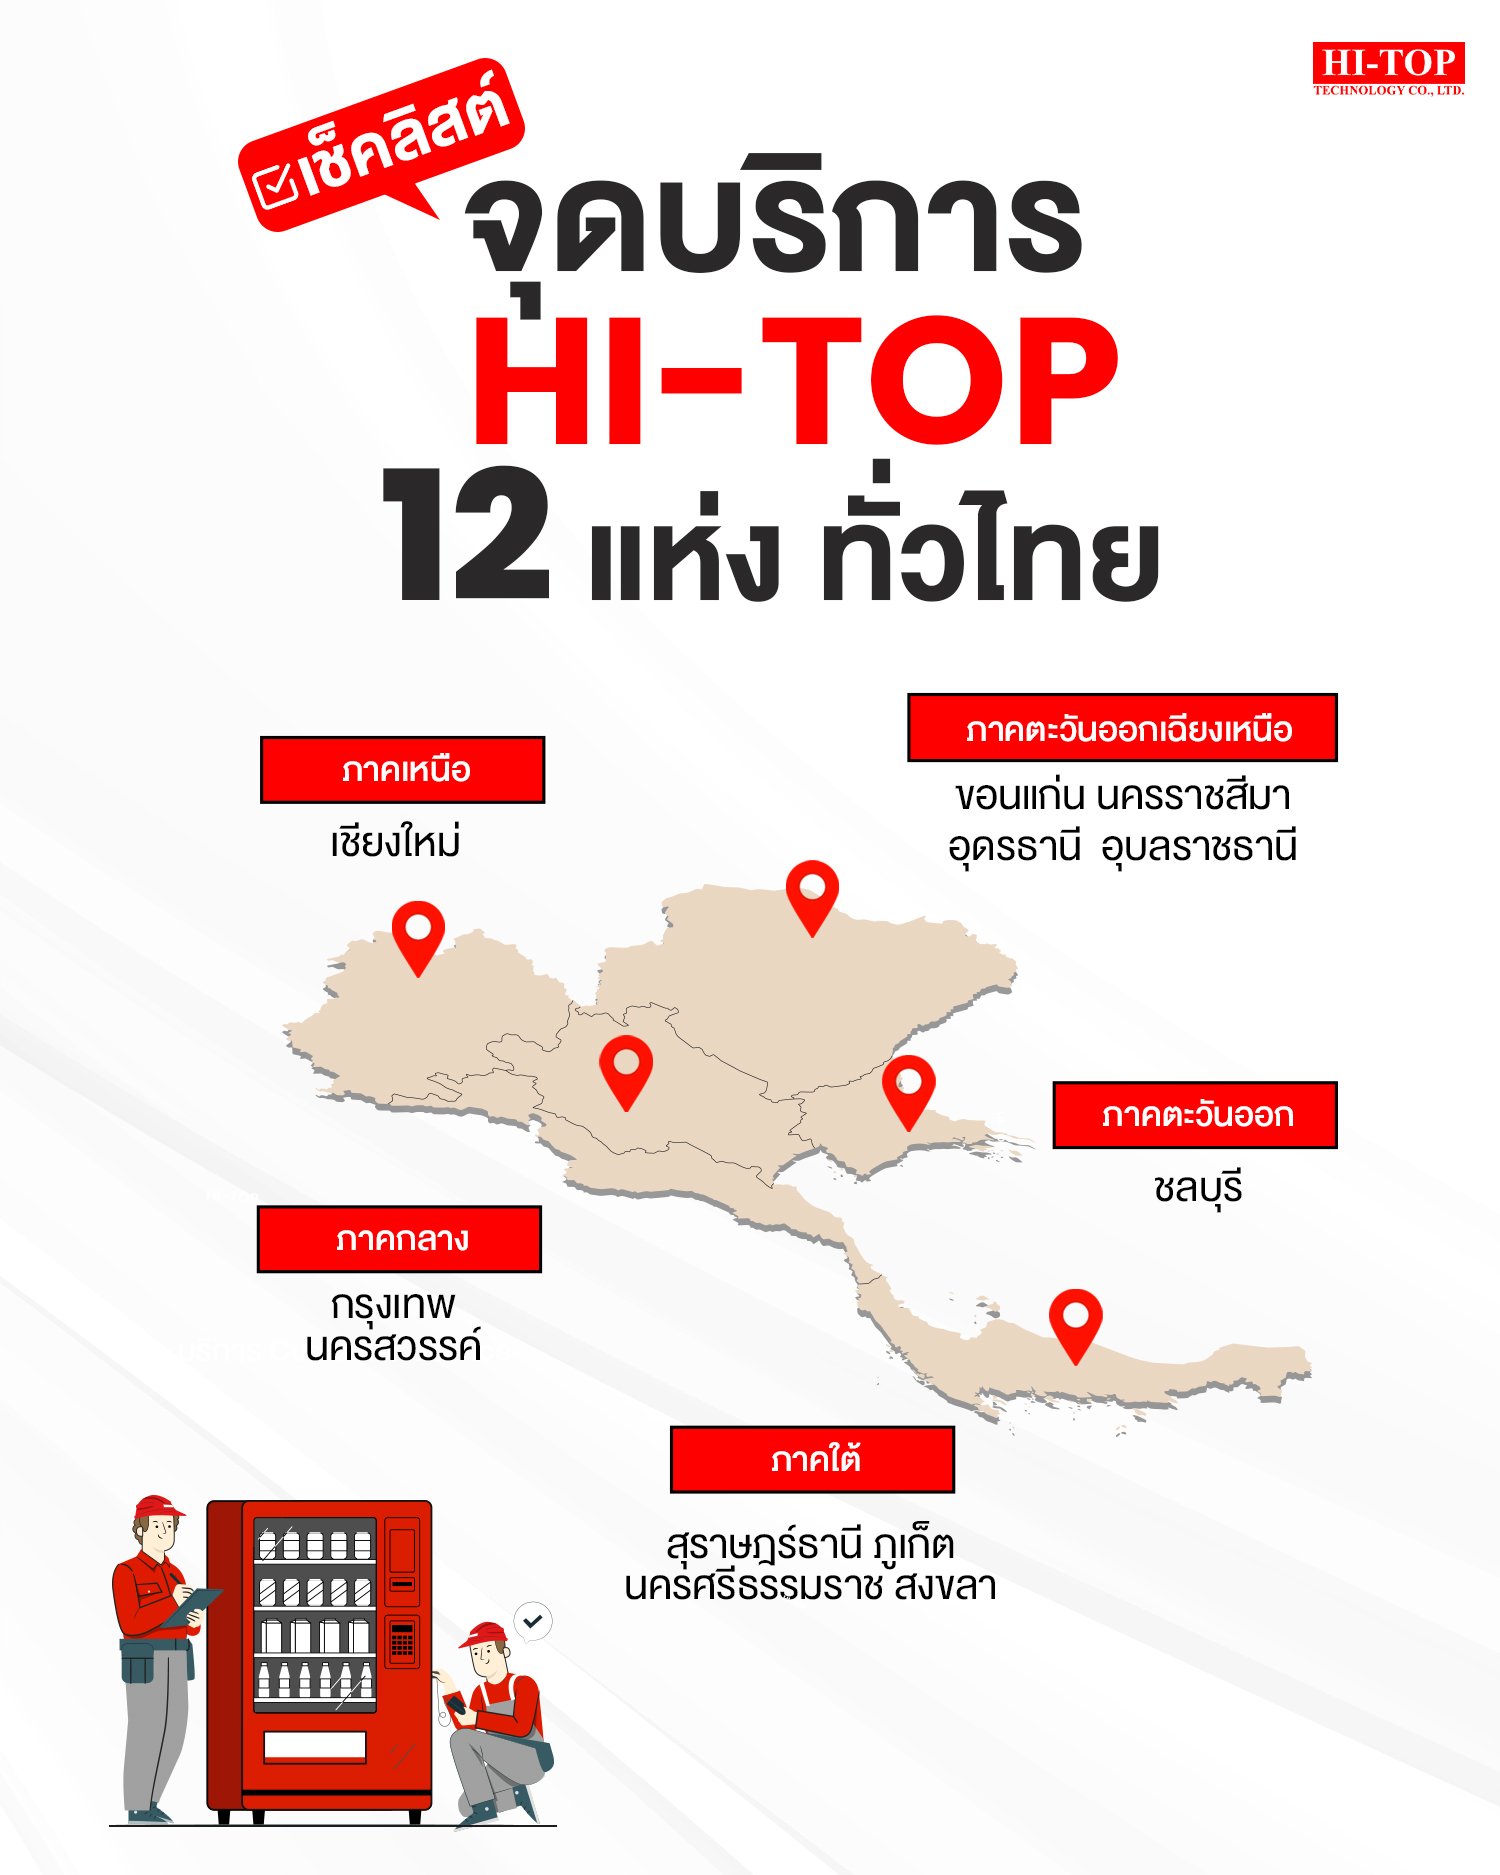 ศูนย์บริการ Hi-Top ที่ครอบคลุมทั่วประเทศ 12 แห่ง